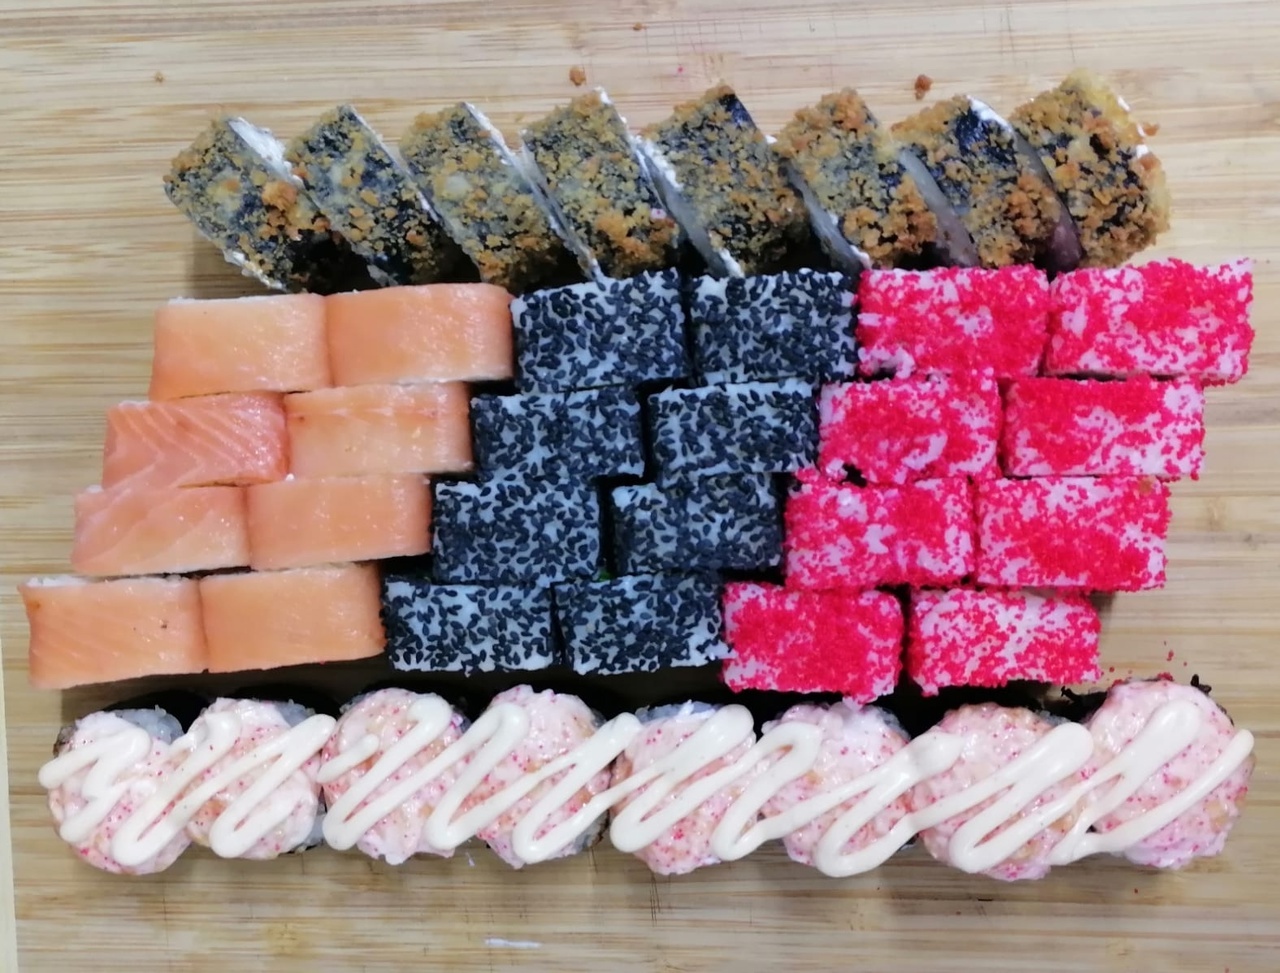 Заказать суши на дом бесплатно омск фото 89